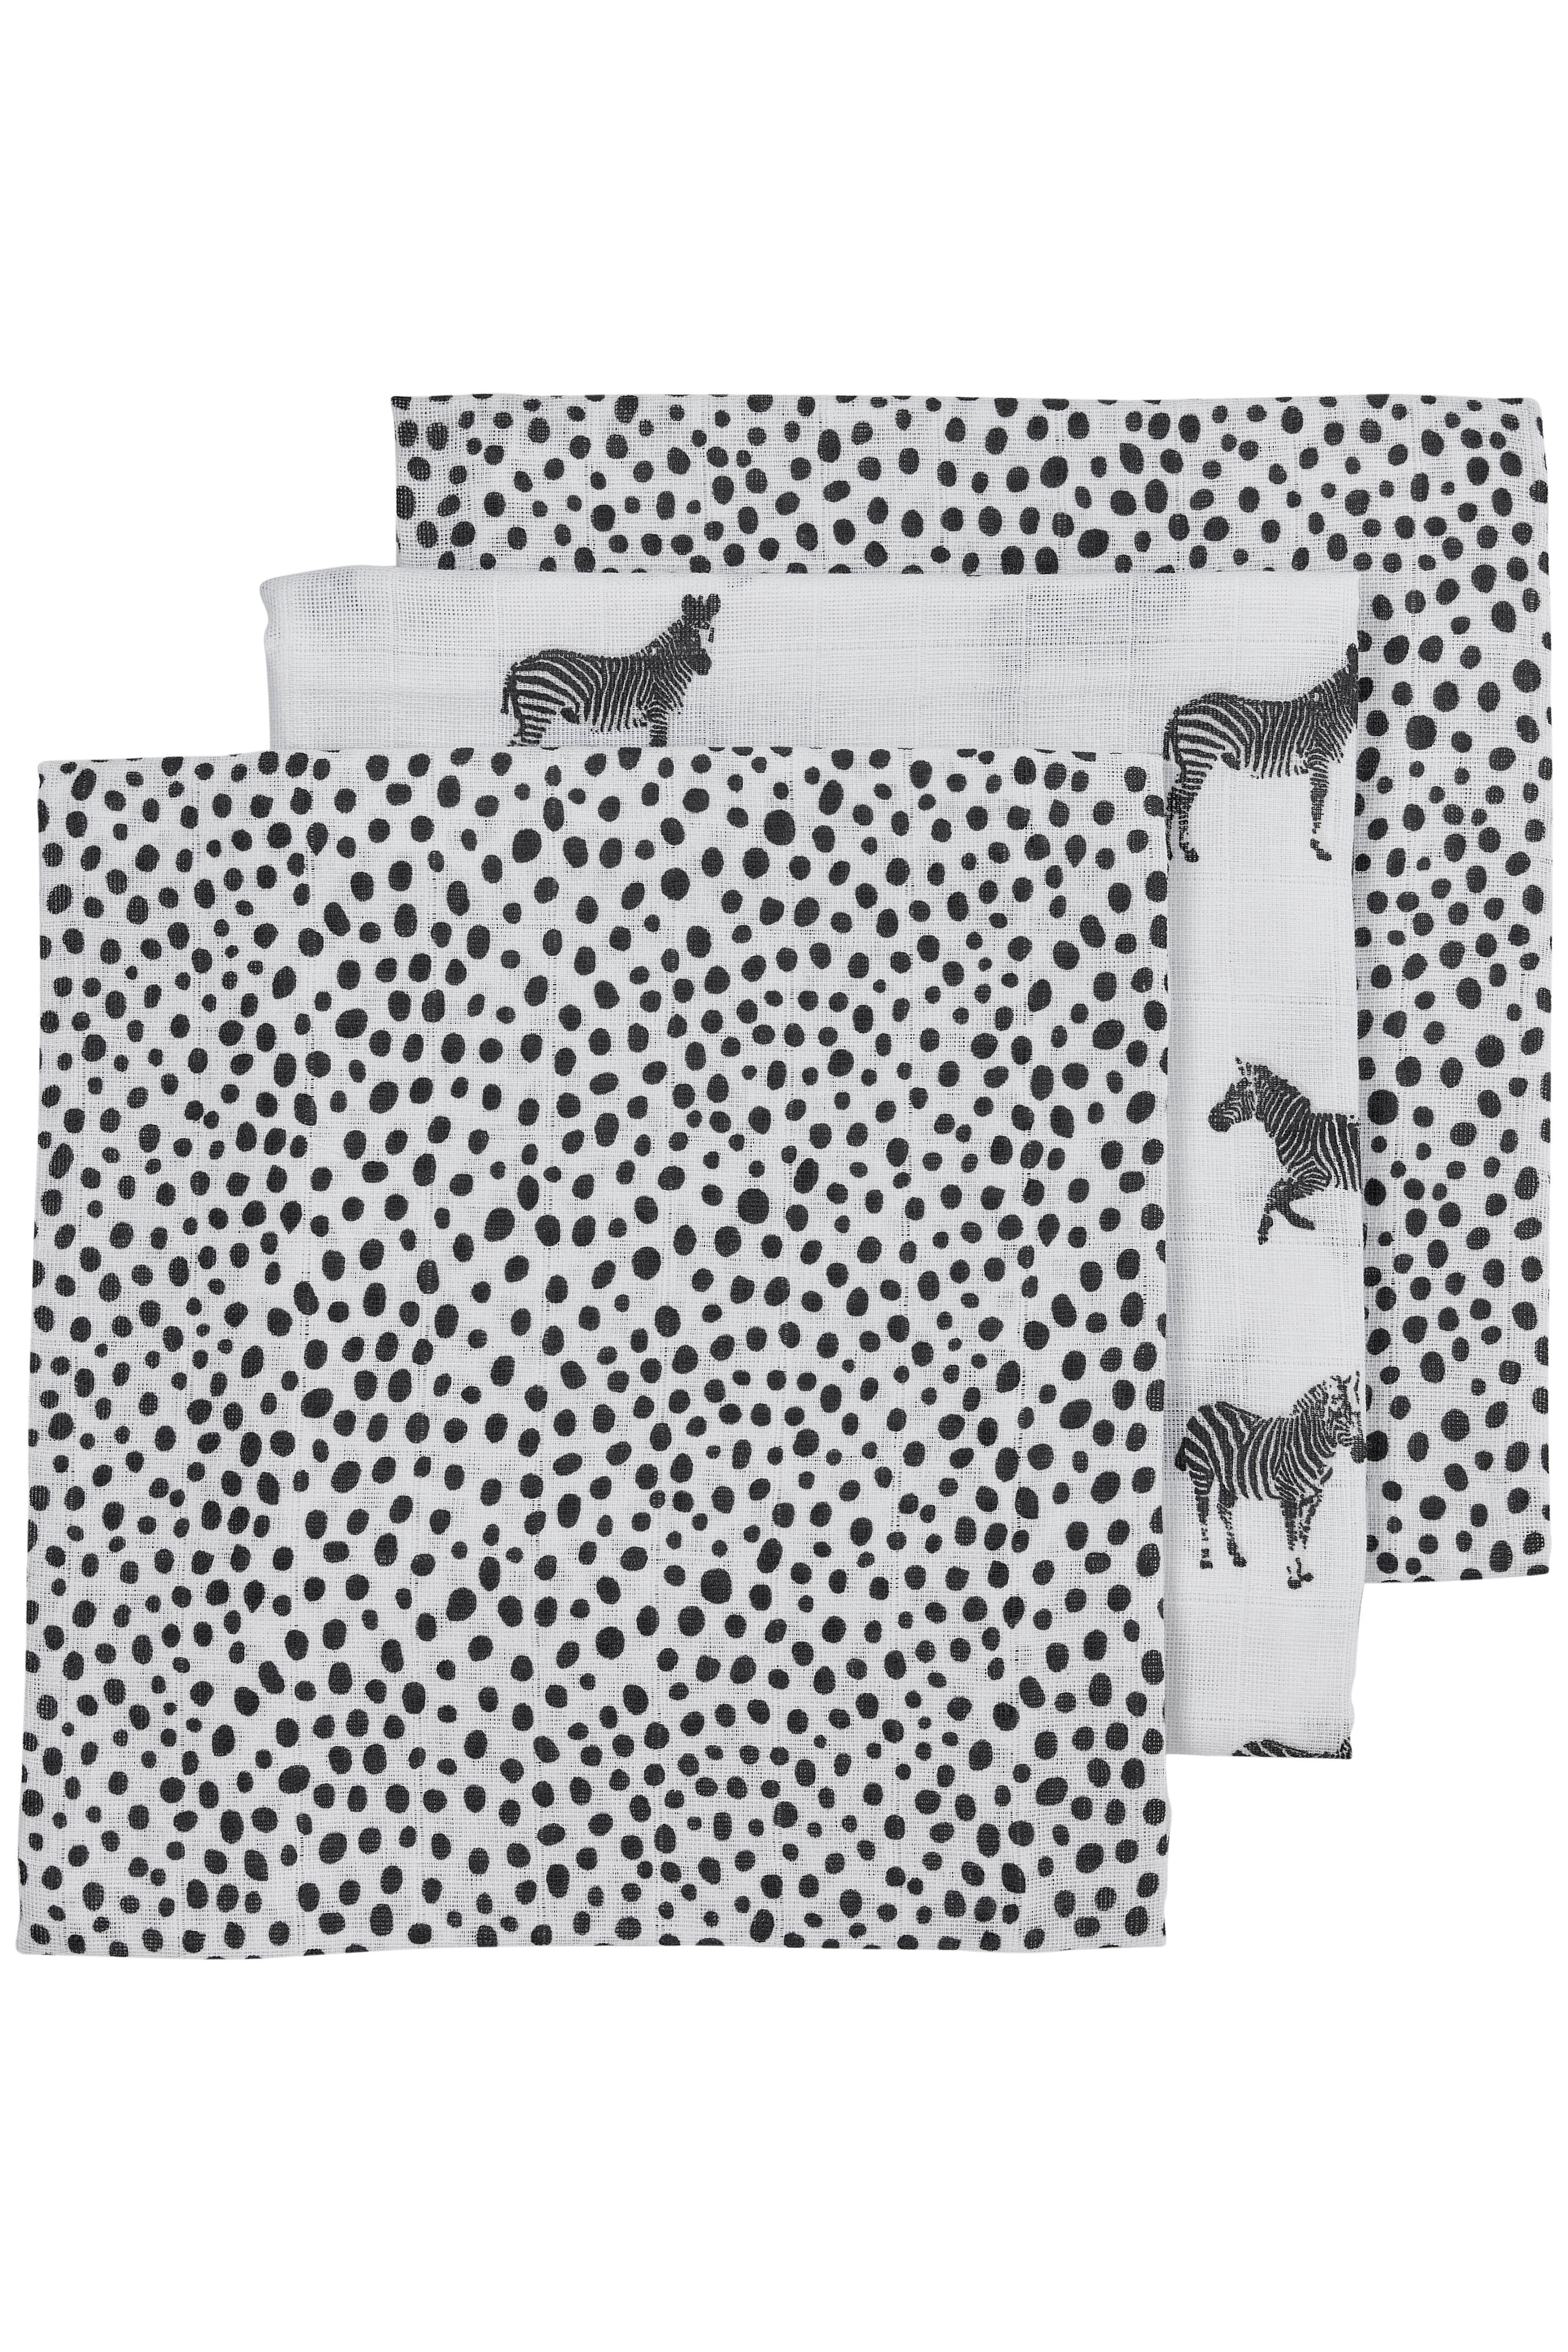 Meyco hydrofiele luier Zebra animal Cheetah set van 3 70x70 cm zwart/wit online kopen